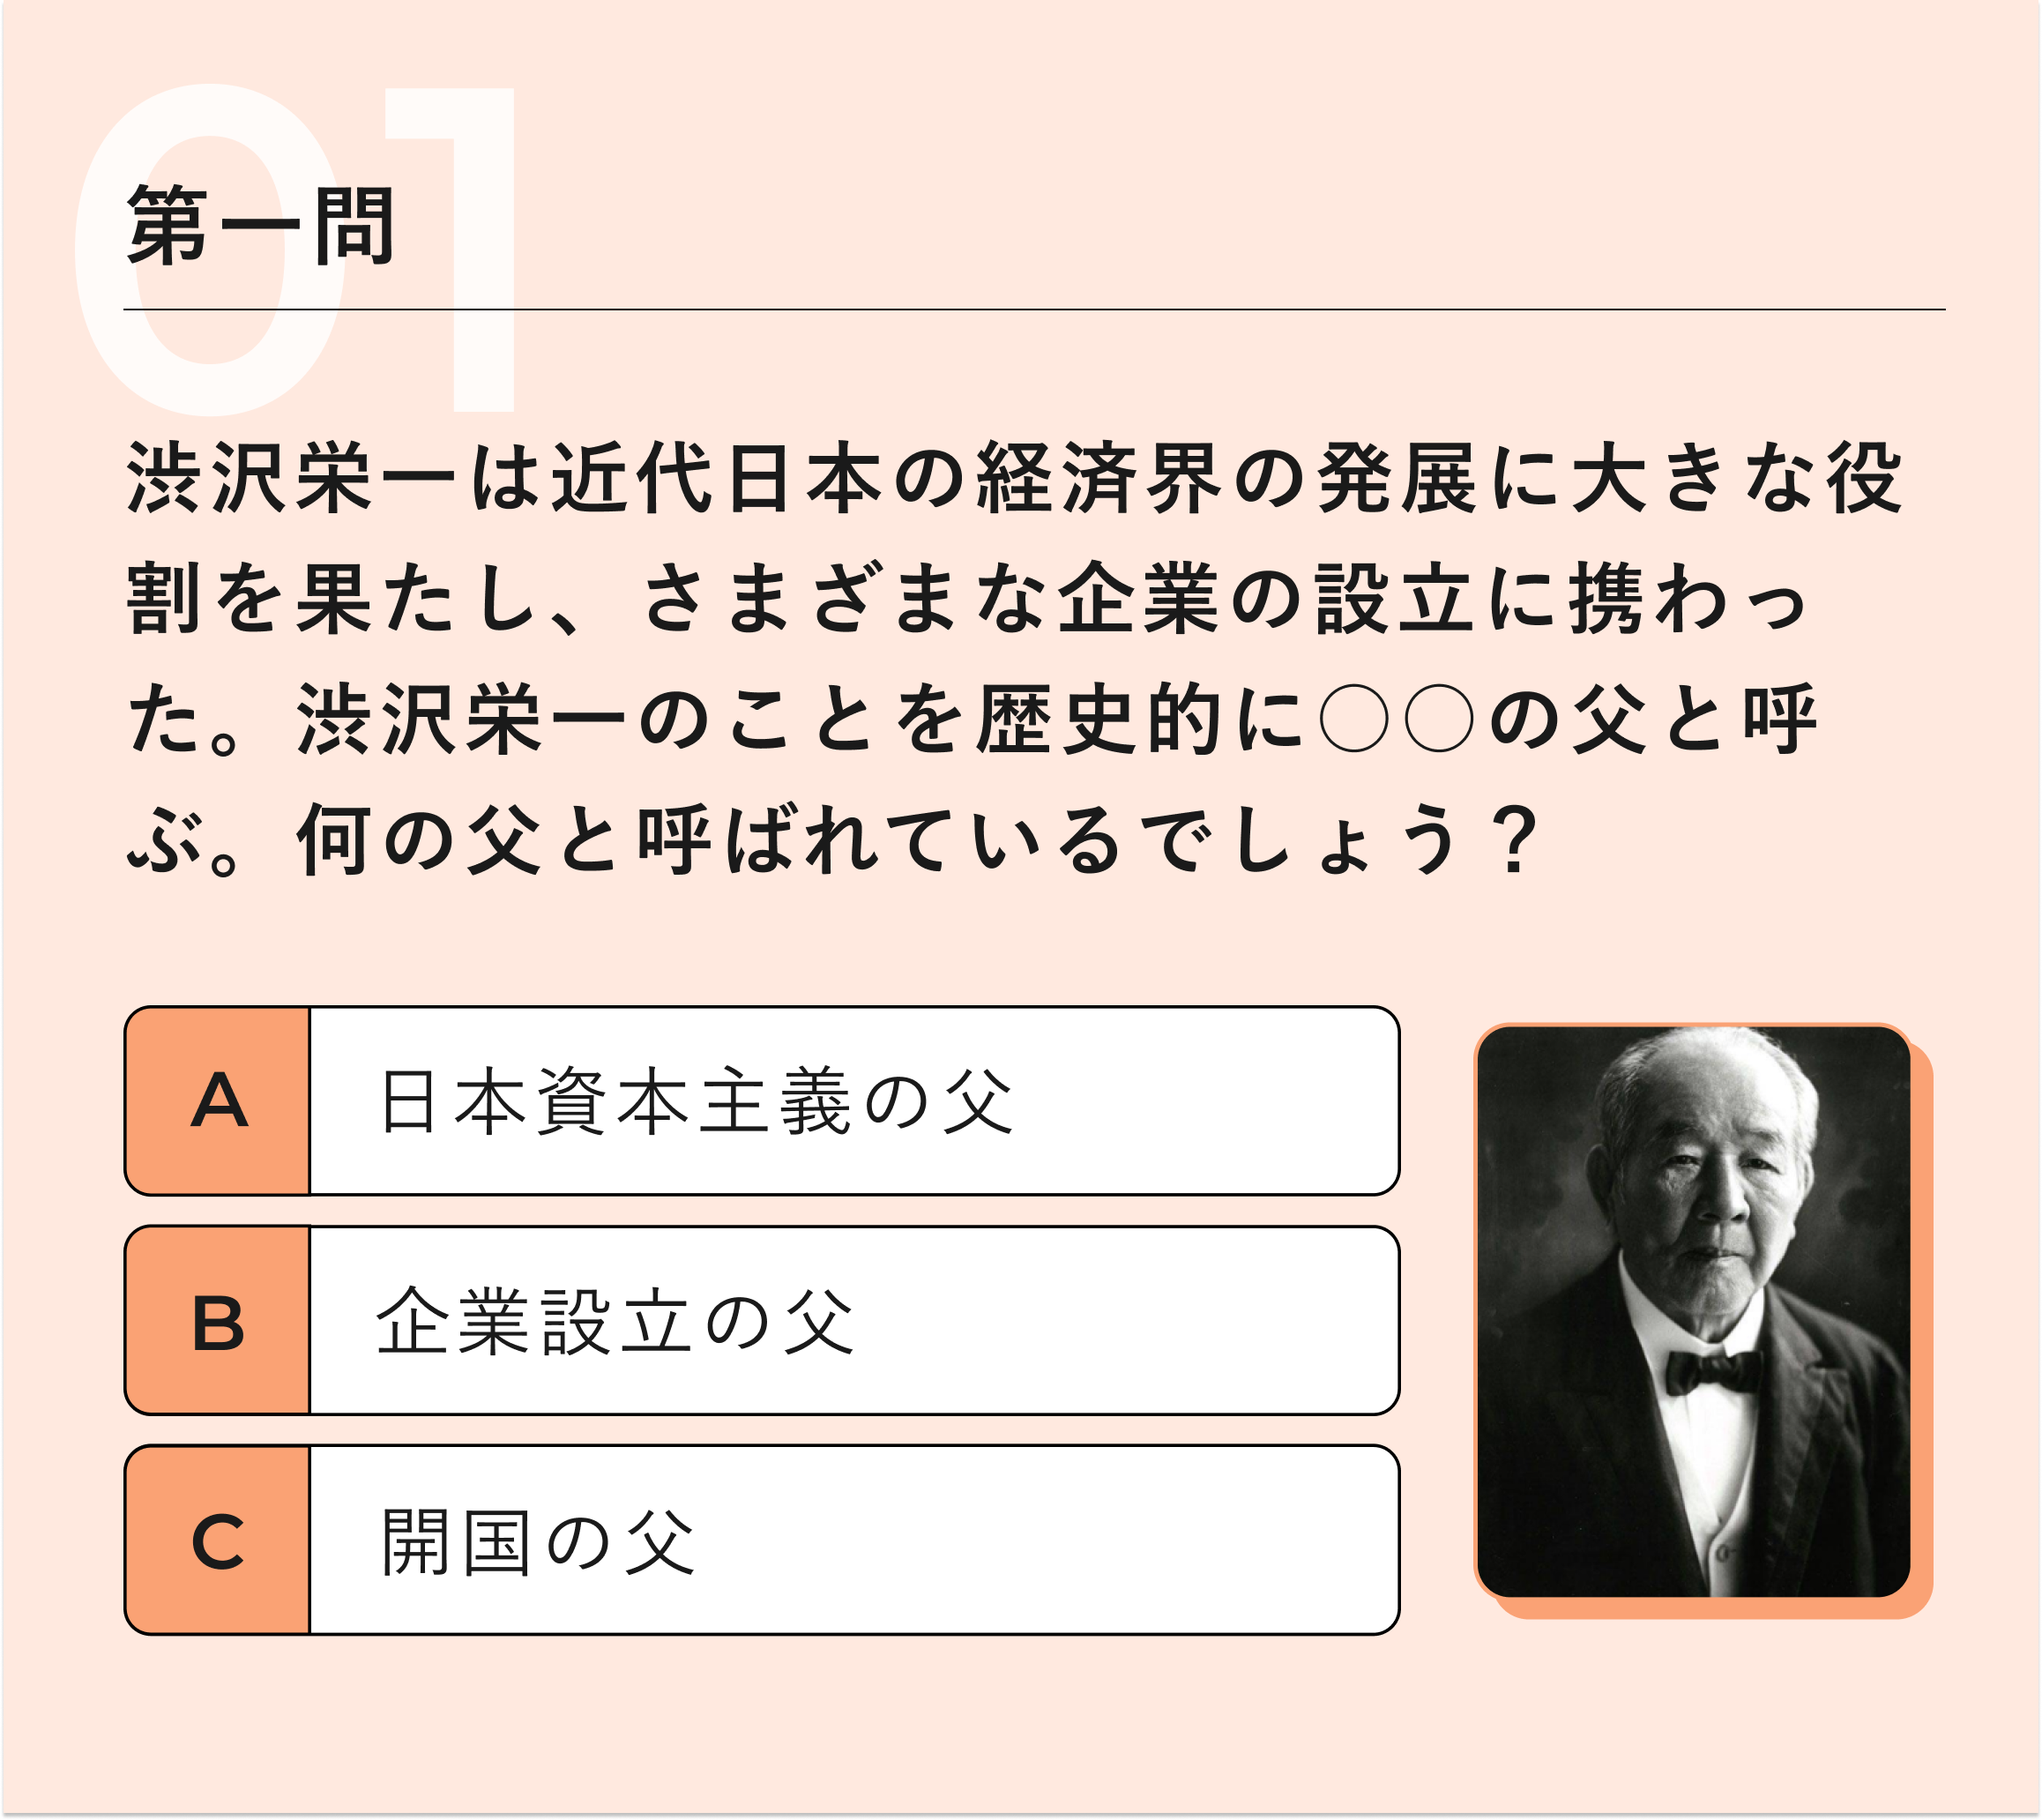 第一問：渋沢栄一は近代日本の経済界の発展に大きな役割を果たし、 さまざまな 企業の設立に携わった。渋沢栄一のことを歴史的に○○の父と呼ぶ。 何の父と呼ばれているでしょう?　A日本資本主義の父　B企業設立の父　C開国の父